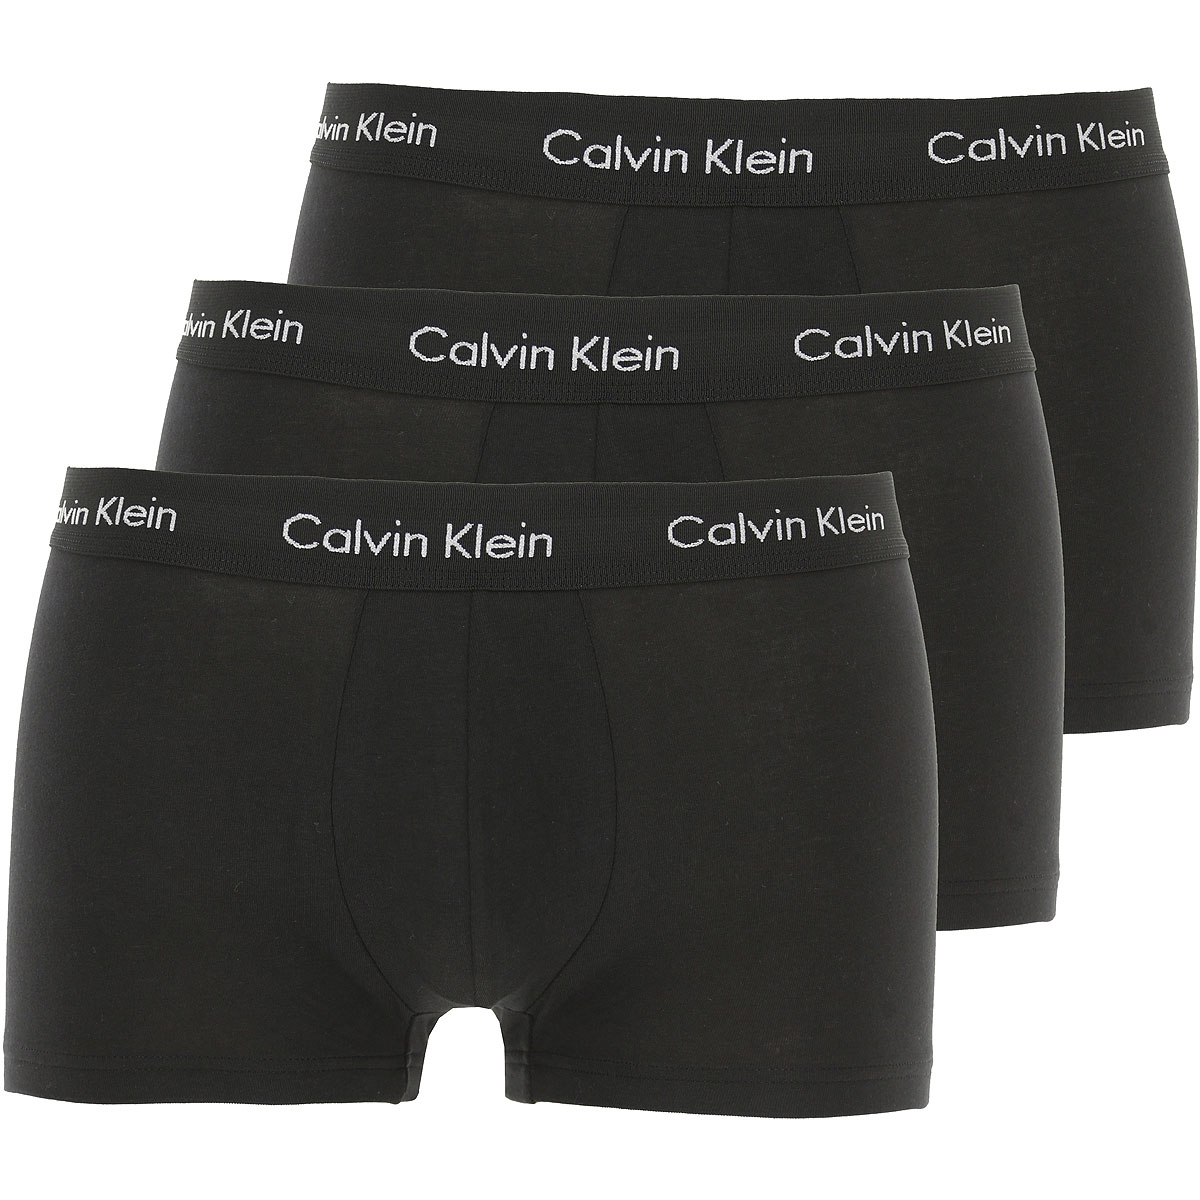 Calvin Klein Boxer Shorts für Herren, Unterhose, Short, Boxer Günstig im Sale, 3 Pack, Schwarz, Baumwolle, 2017, M S XL